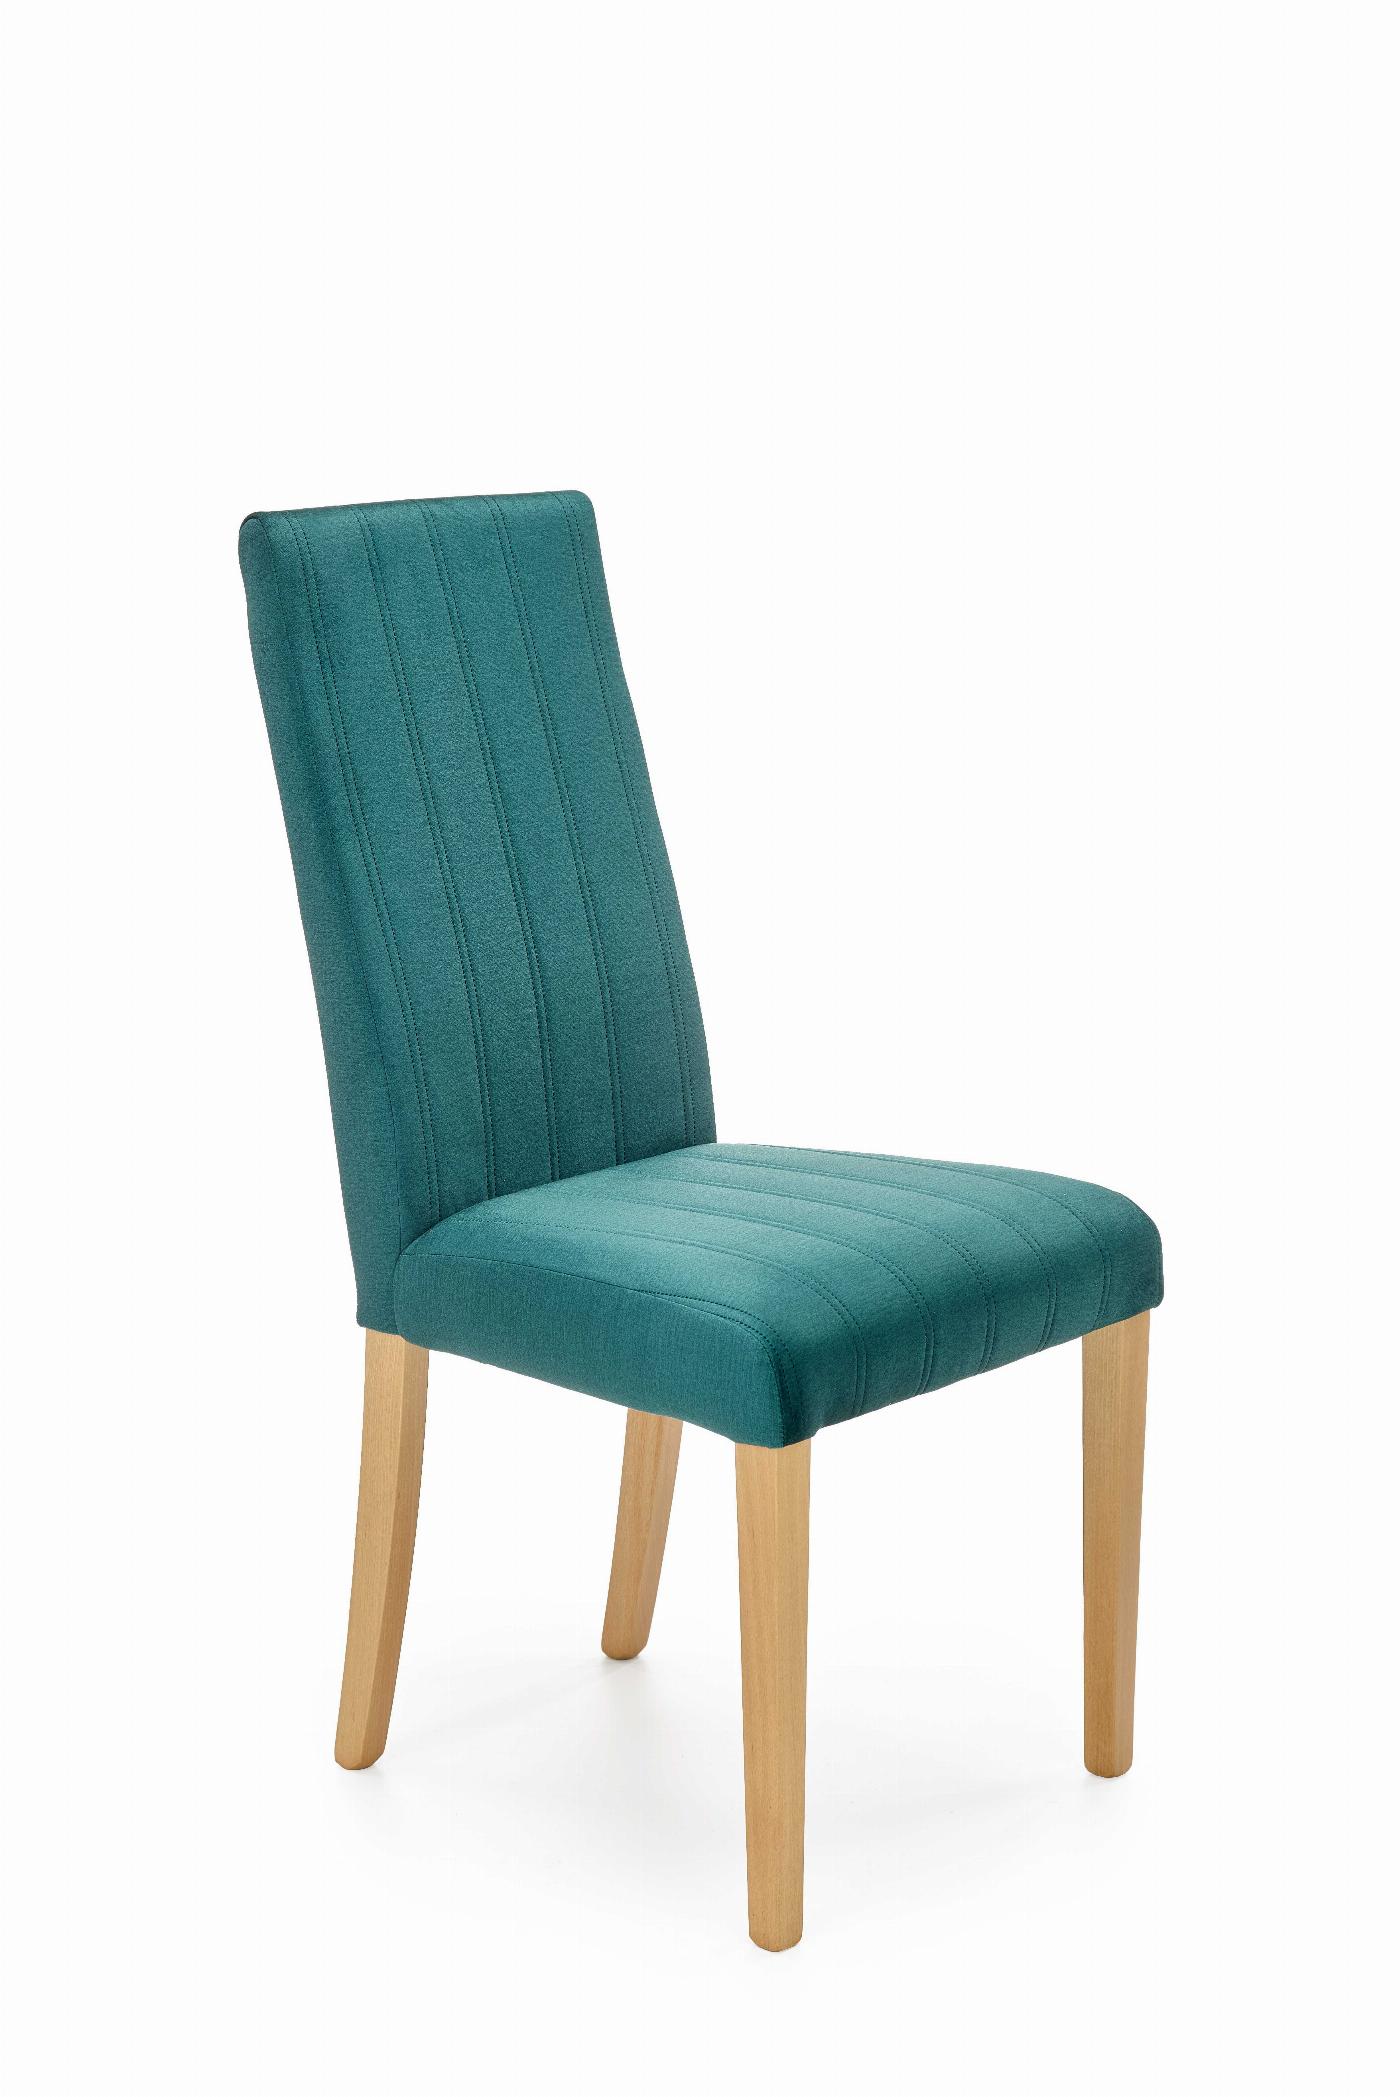 DIEGO 3 krzesło dąb miodowy / tap. velvet pikowany Pasy - MONOLITH 37 (ciemny zielony)